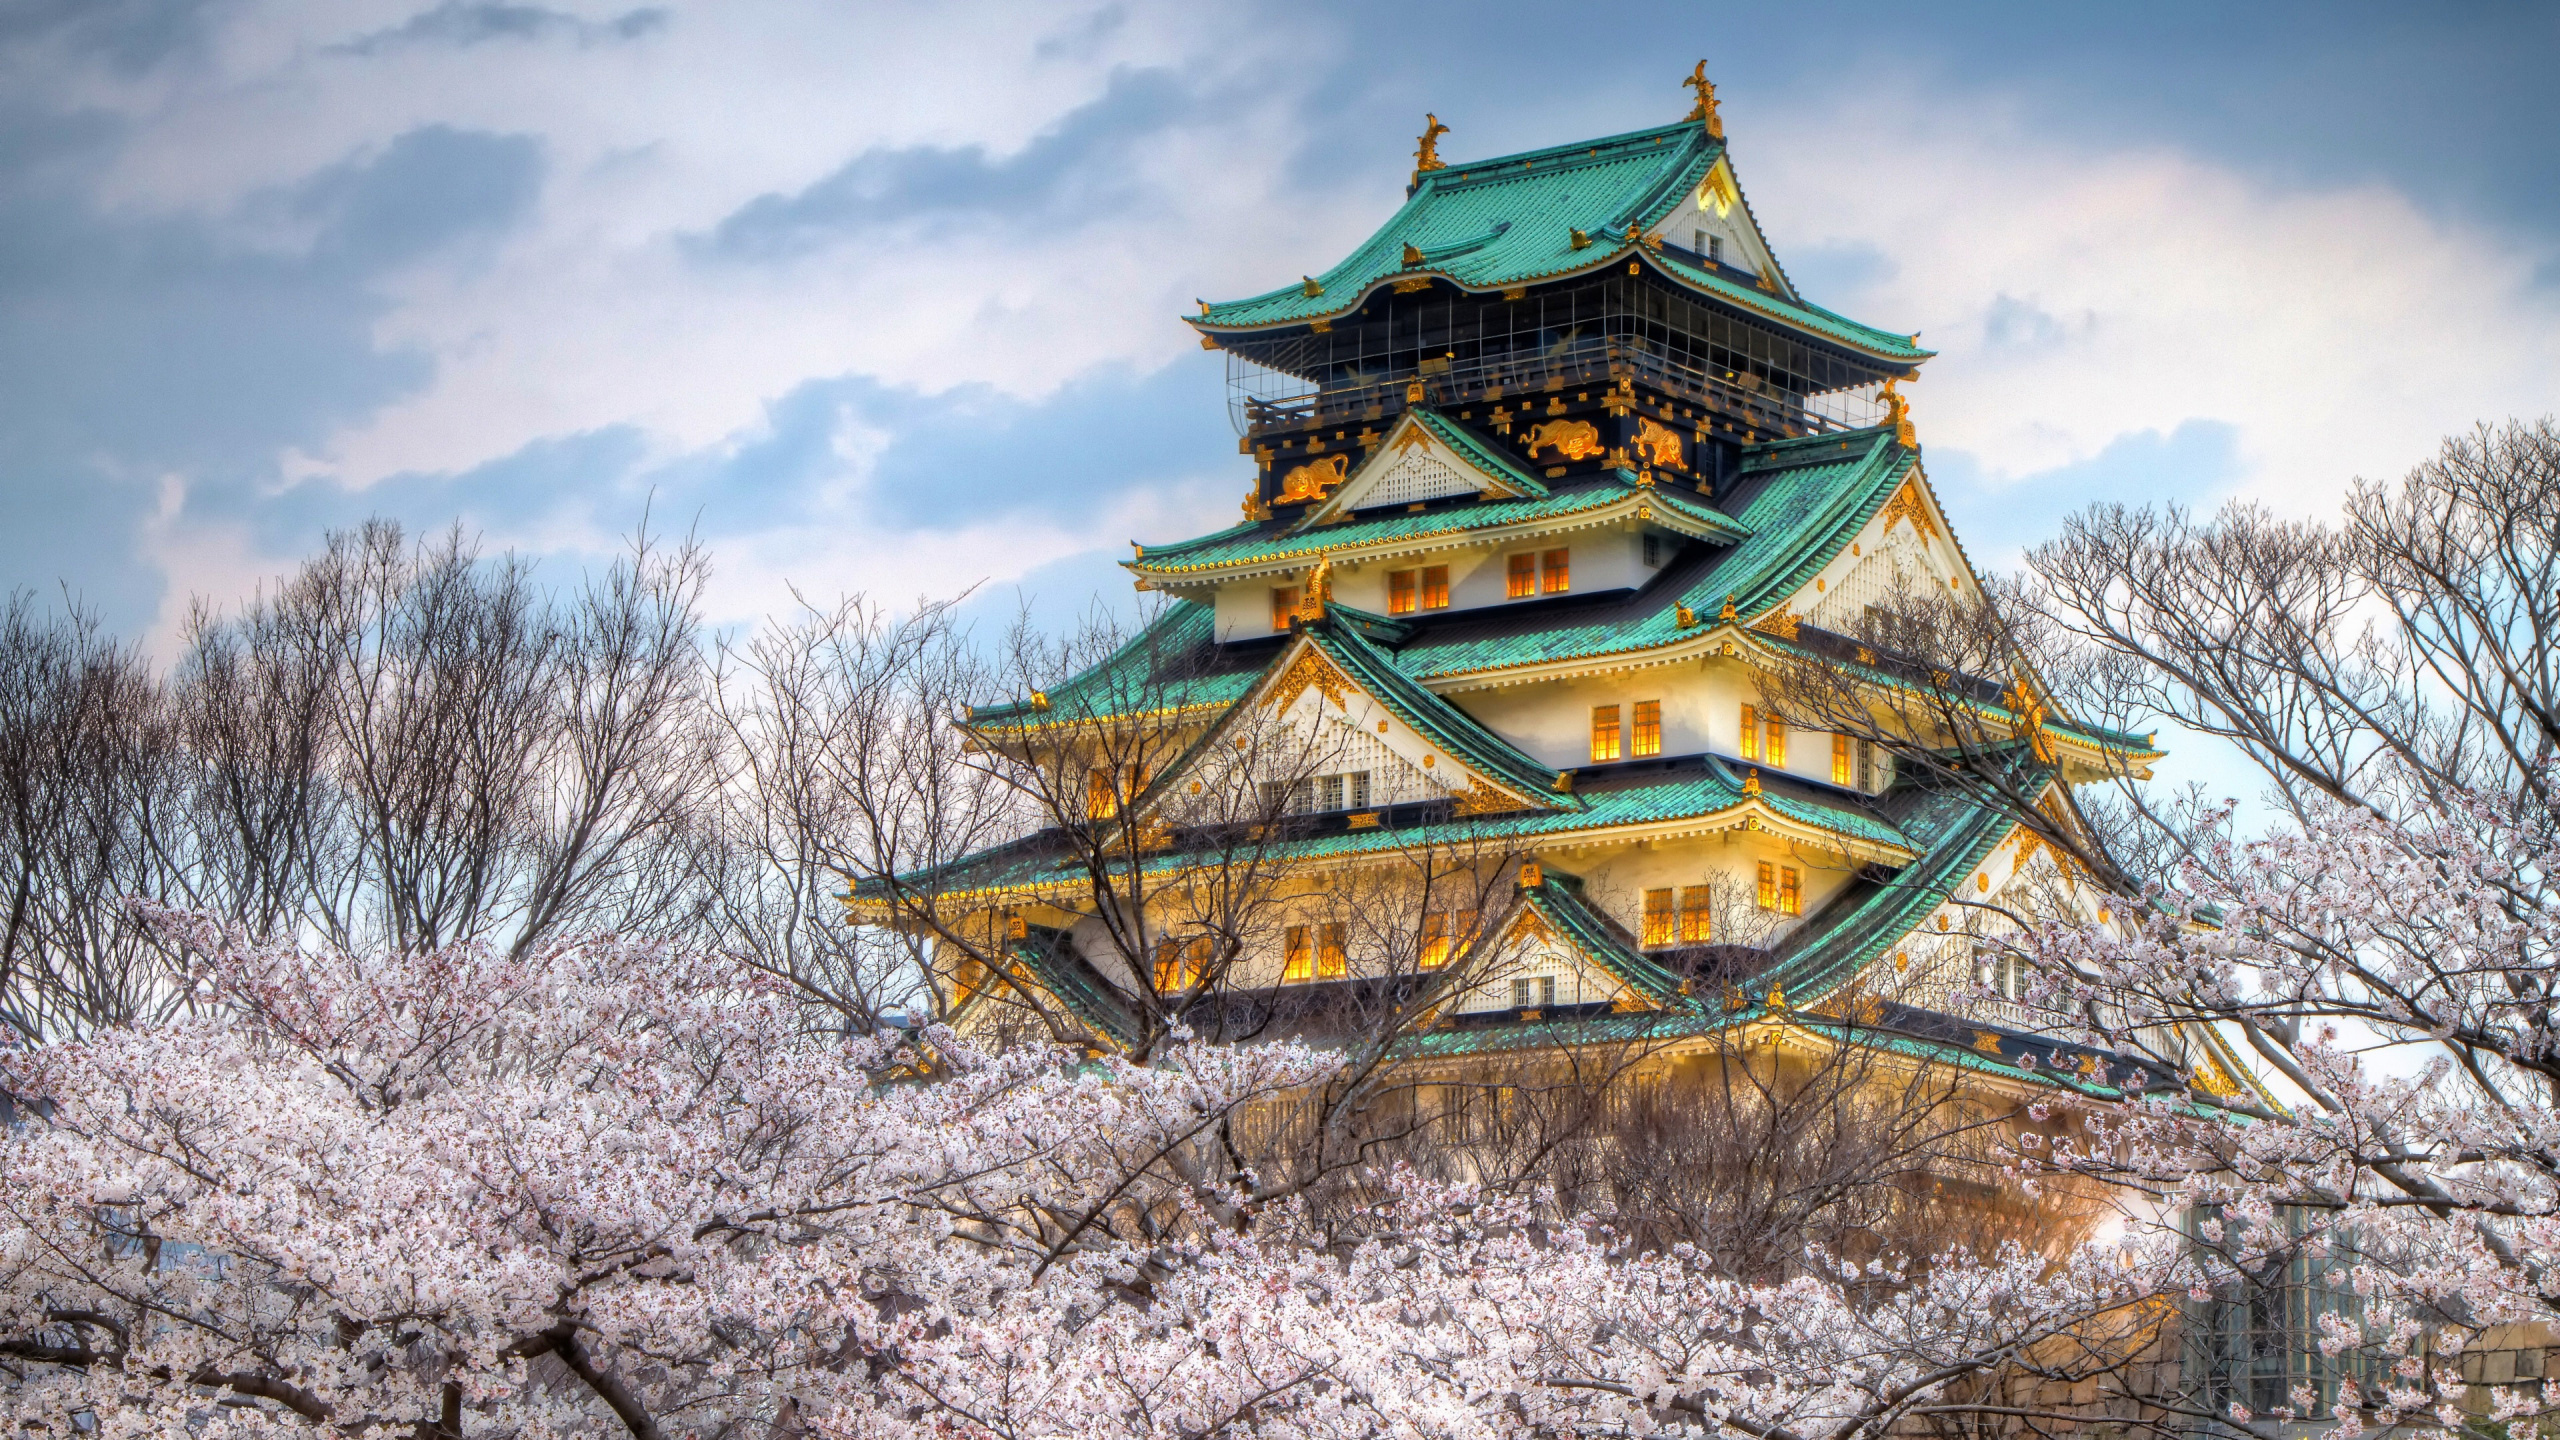 Castillo Japonés, El Castillo De Osaka, El Castillo De Himeji, Castillo, Pagoda. Wallpaper in 2560x1440 Resolution